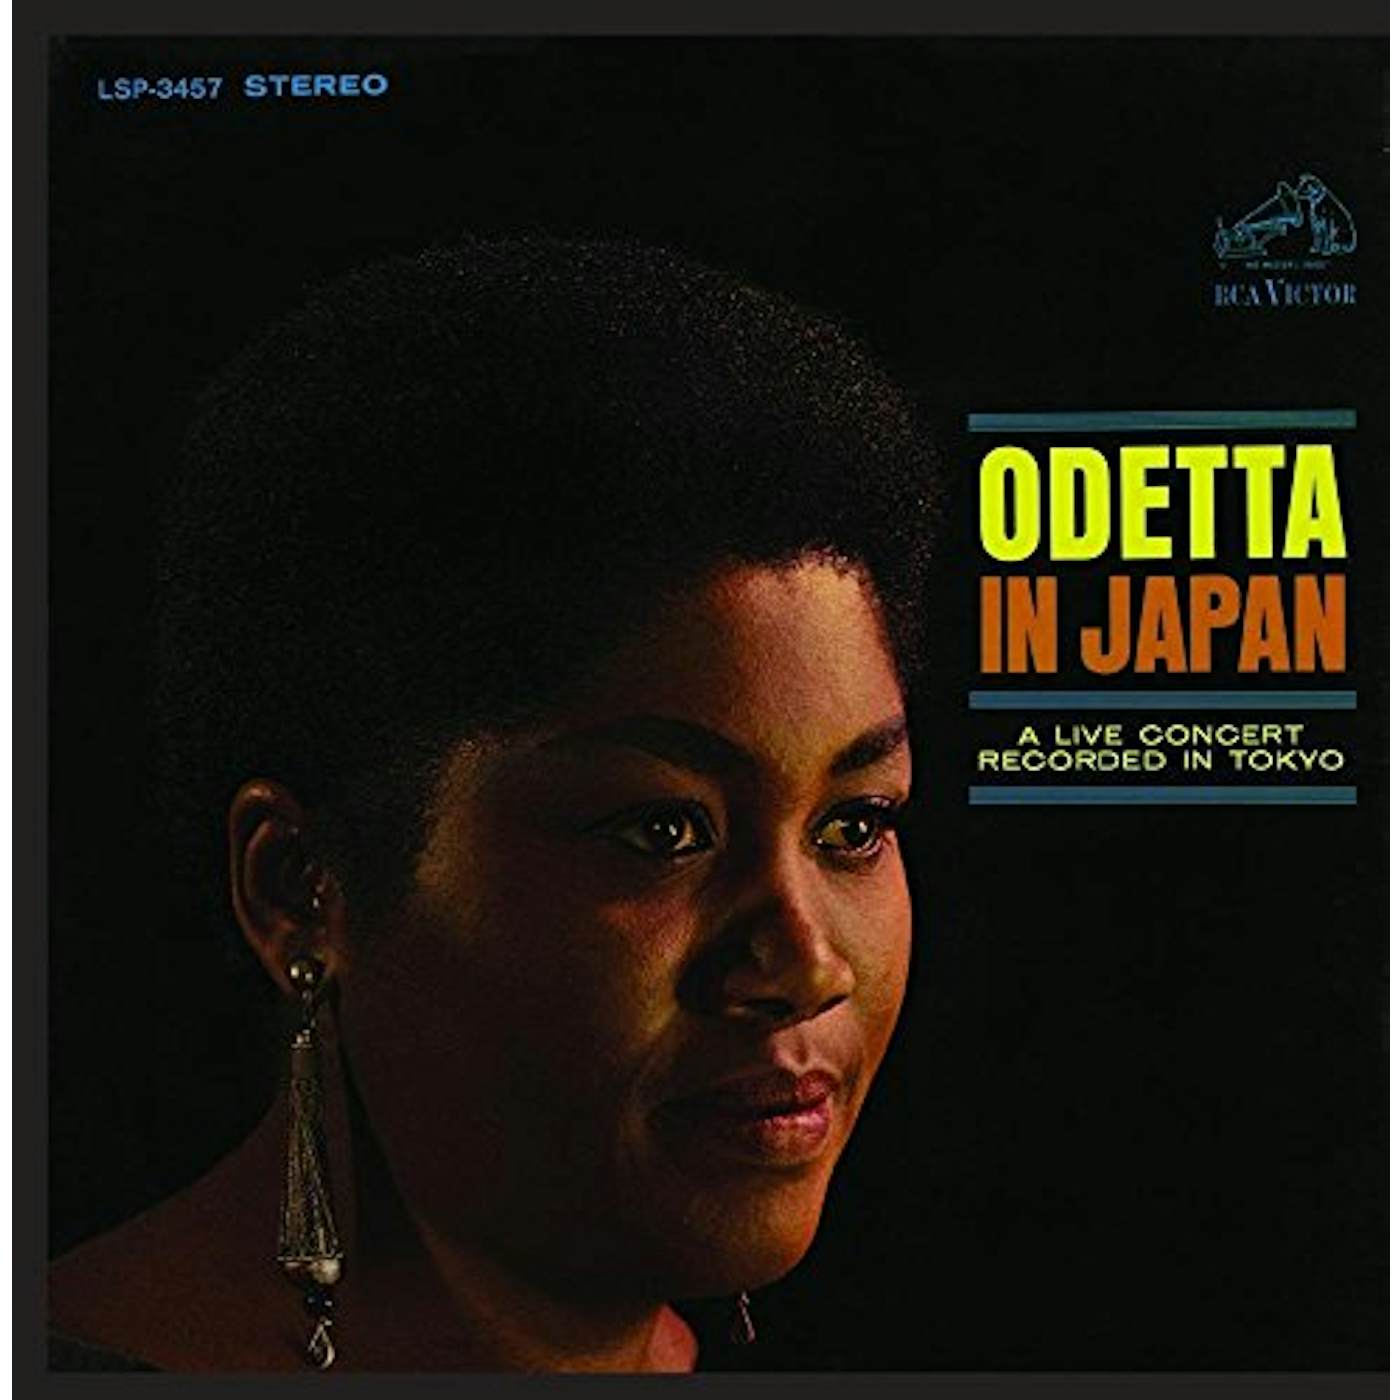 ODETTA IN JAPAN (LIVE) CD